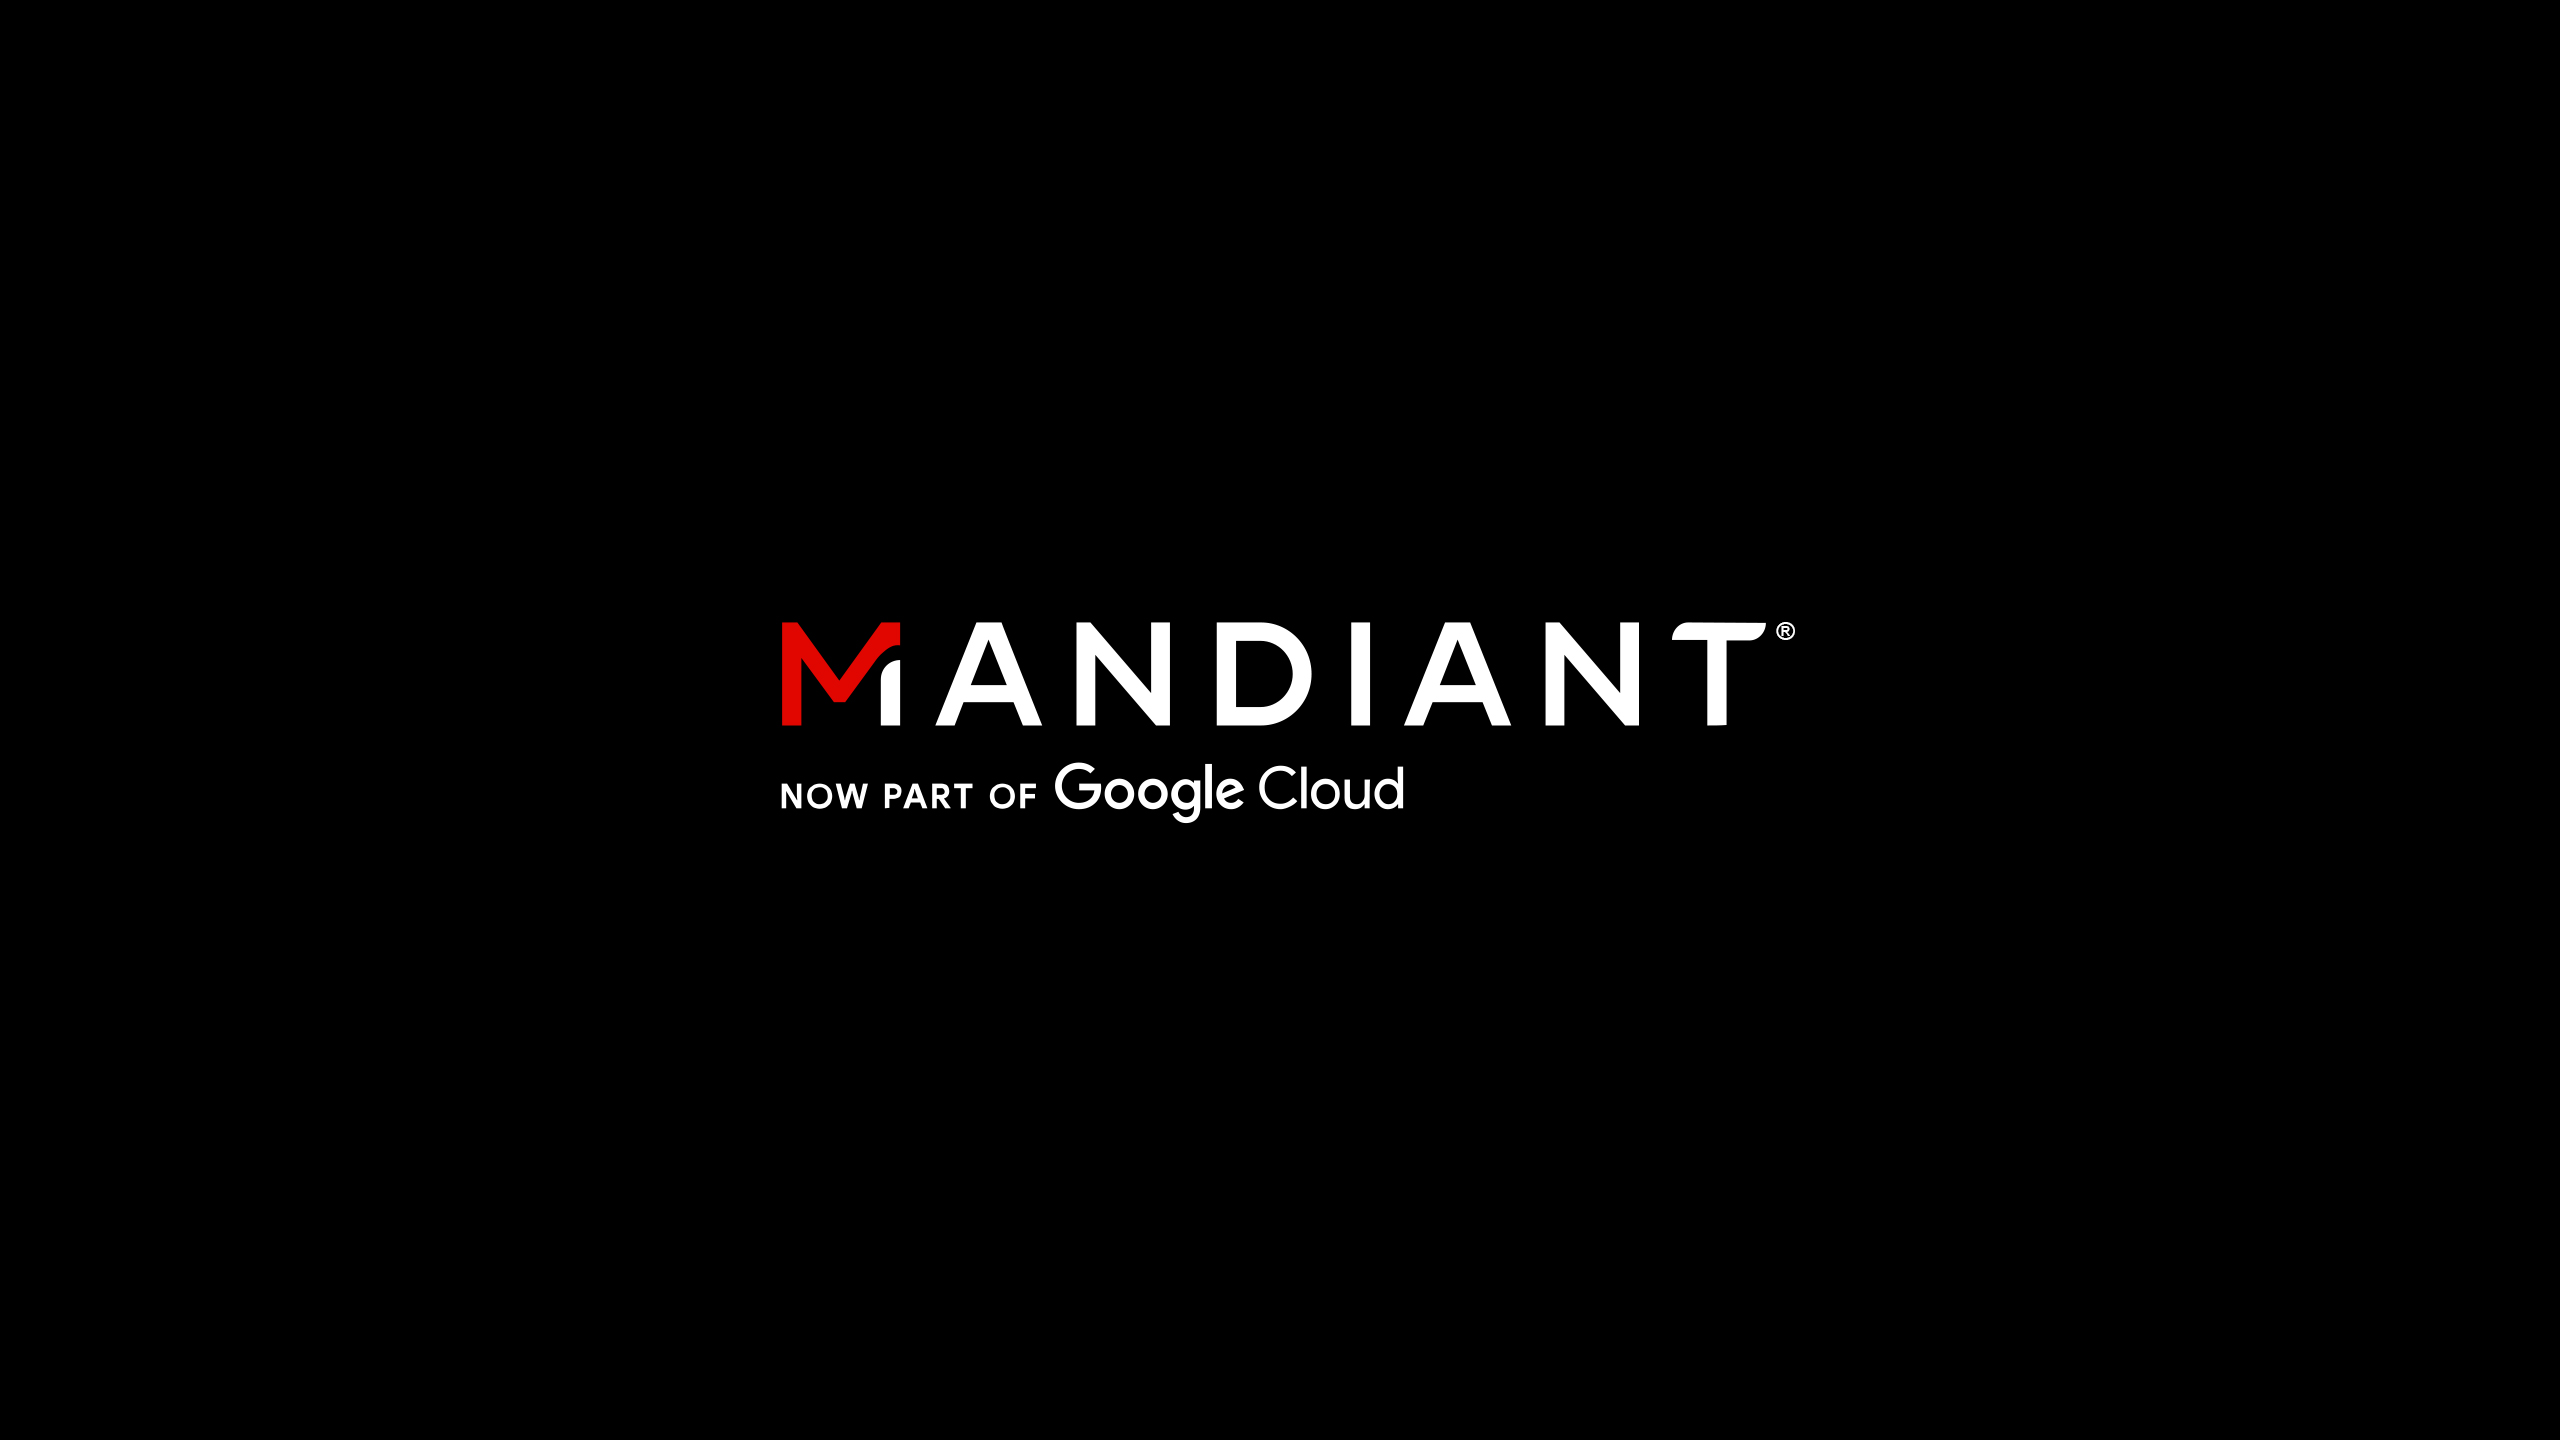 www.mandiant.com